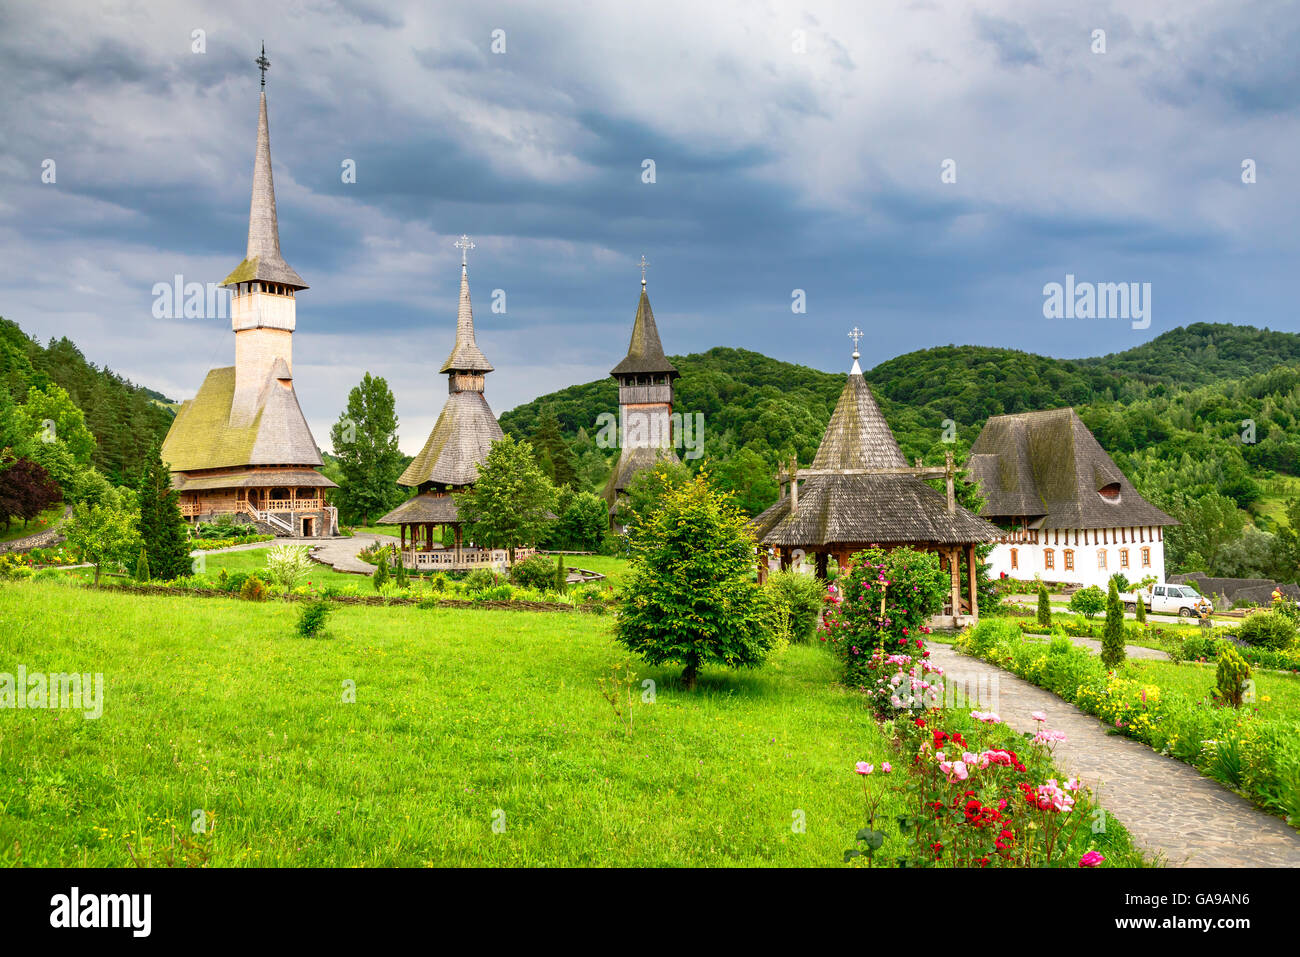 Maramures, Romania. Wooden church of Barsana monastery, Transylvania landmark. Stock Photo